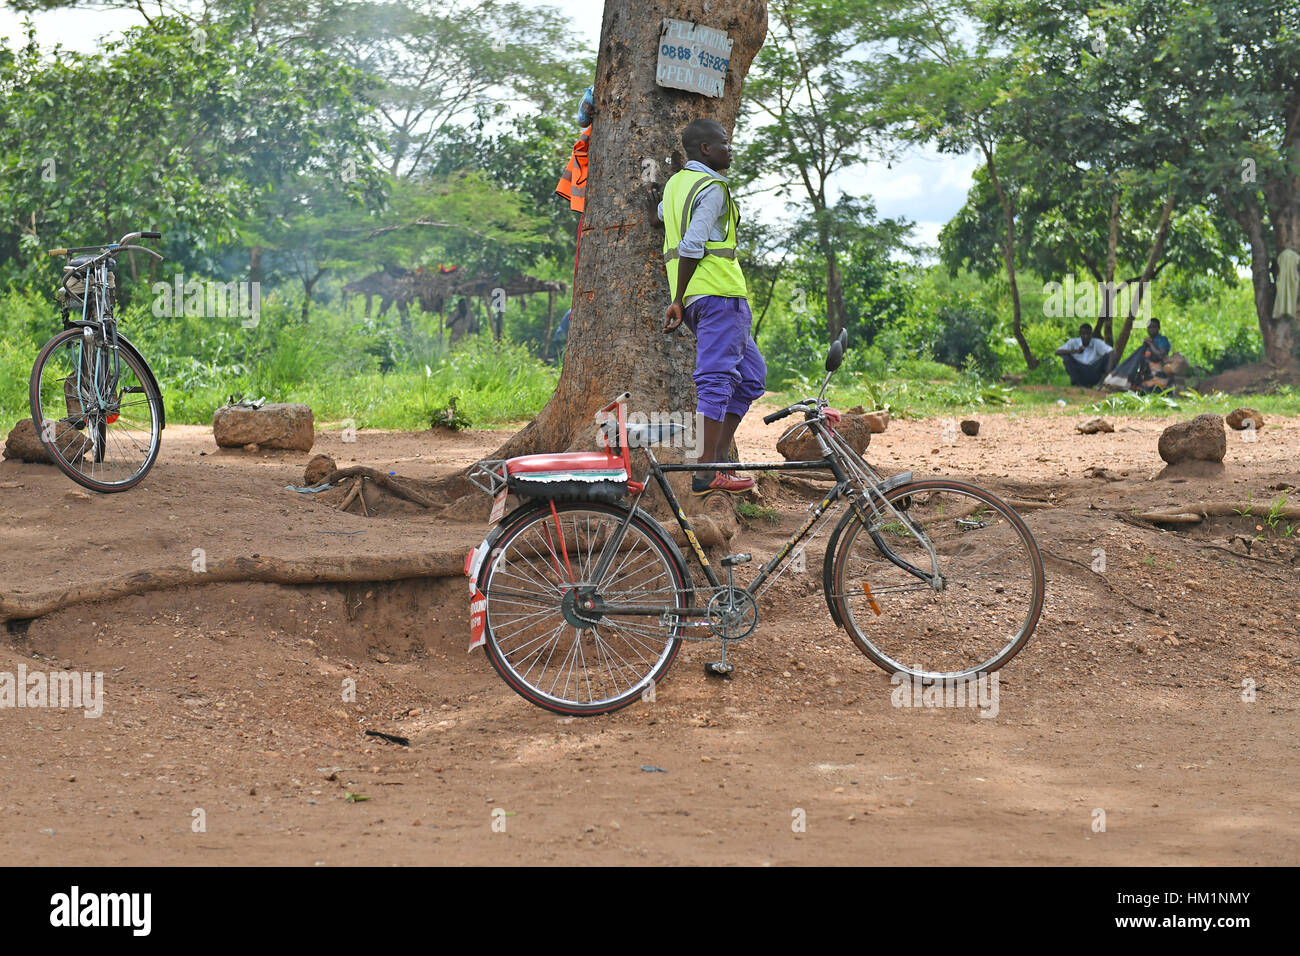 Lilongwe, Malawi. 30 gen, 2017. Una bicicletta taxi driver attende i clienti a Lilongwe, Malawi, Gennaio 30, 2017. Noleggio Taxi offrire alle persone che non possono permettersi un taxi o minibus un più economico mezzo di trasporto in Malawi. Si possono percorrere molti chilometri su vi ammortizzate biciclette per solo 150 Malawi kwacha (Circa 0,2 dollari US). Credito: Sun Ruibo/Xinhua/Alamy Live News Foto Stock